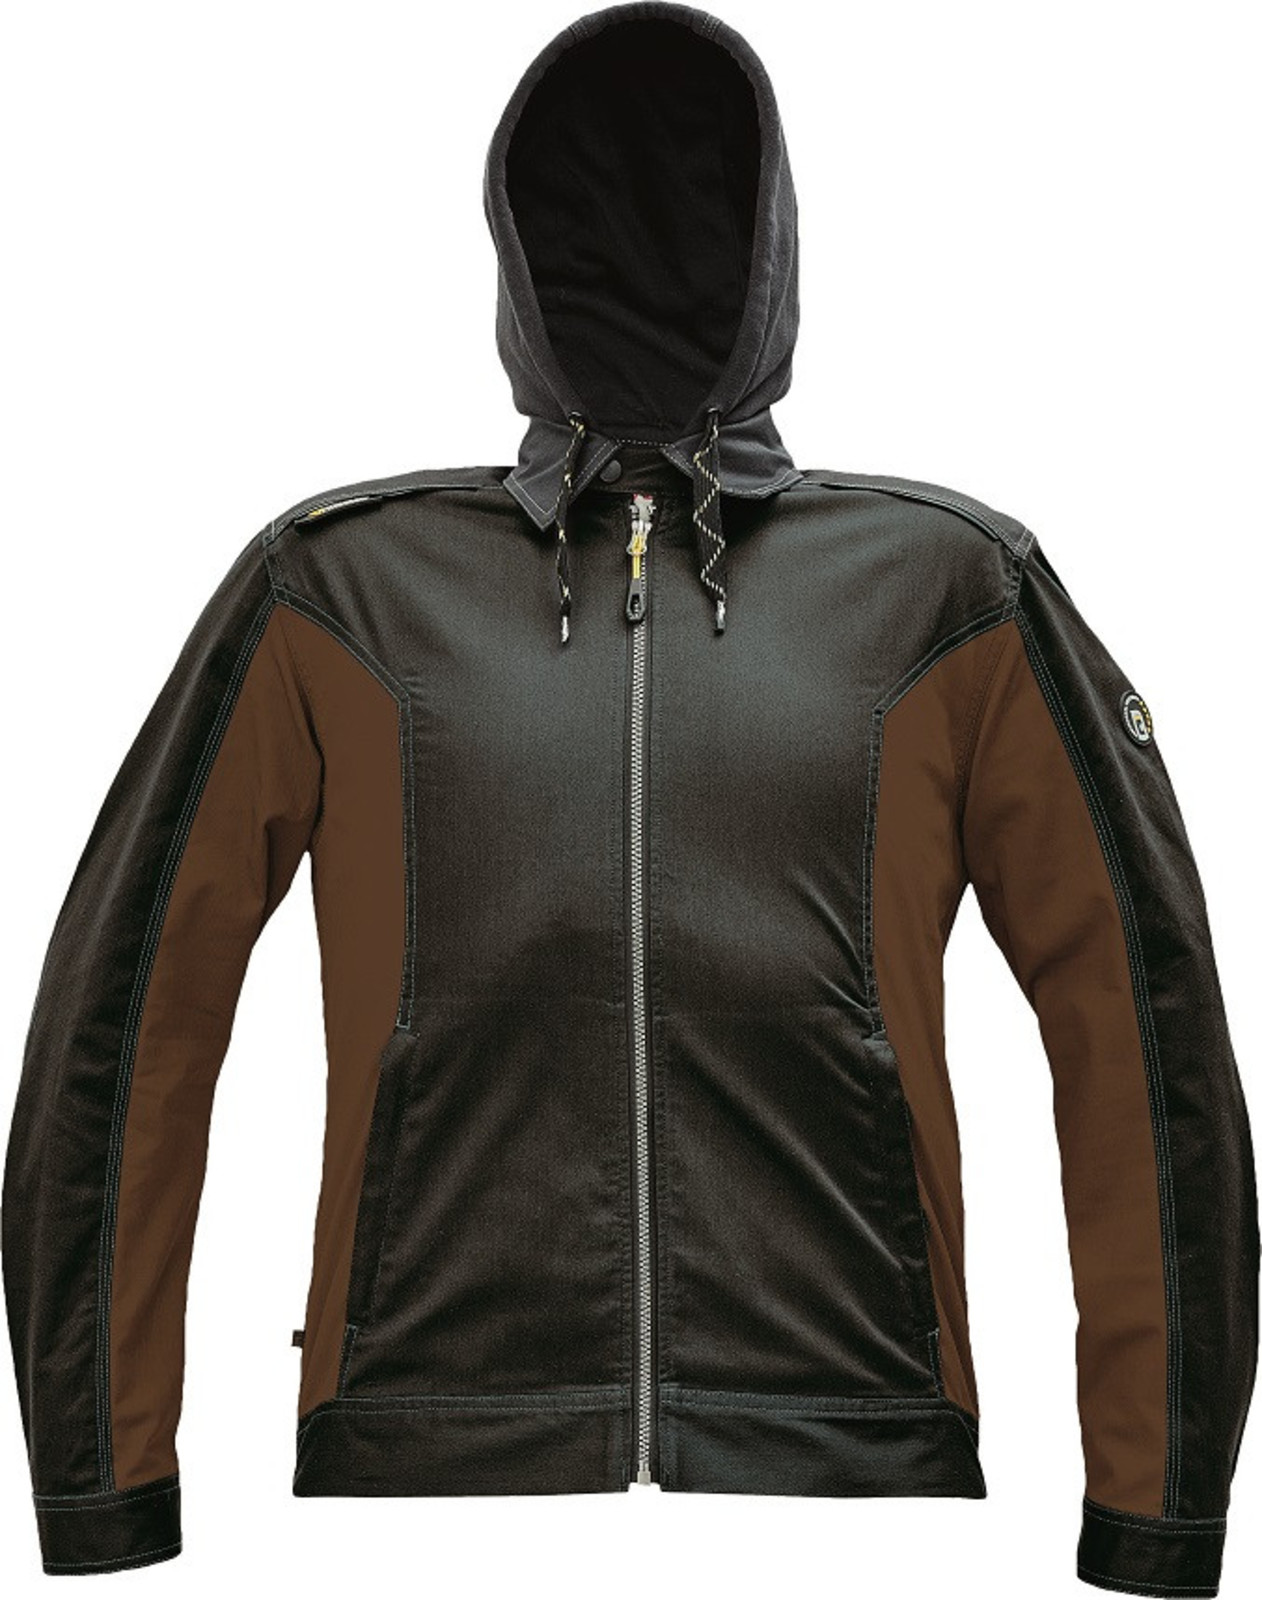 Strečová pracovná bunda Cerva Dayboro - veľkosť: 58, farba: tmavo hnedá